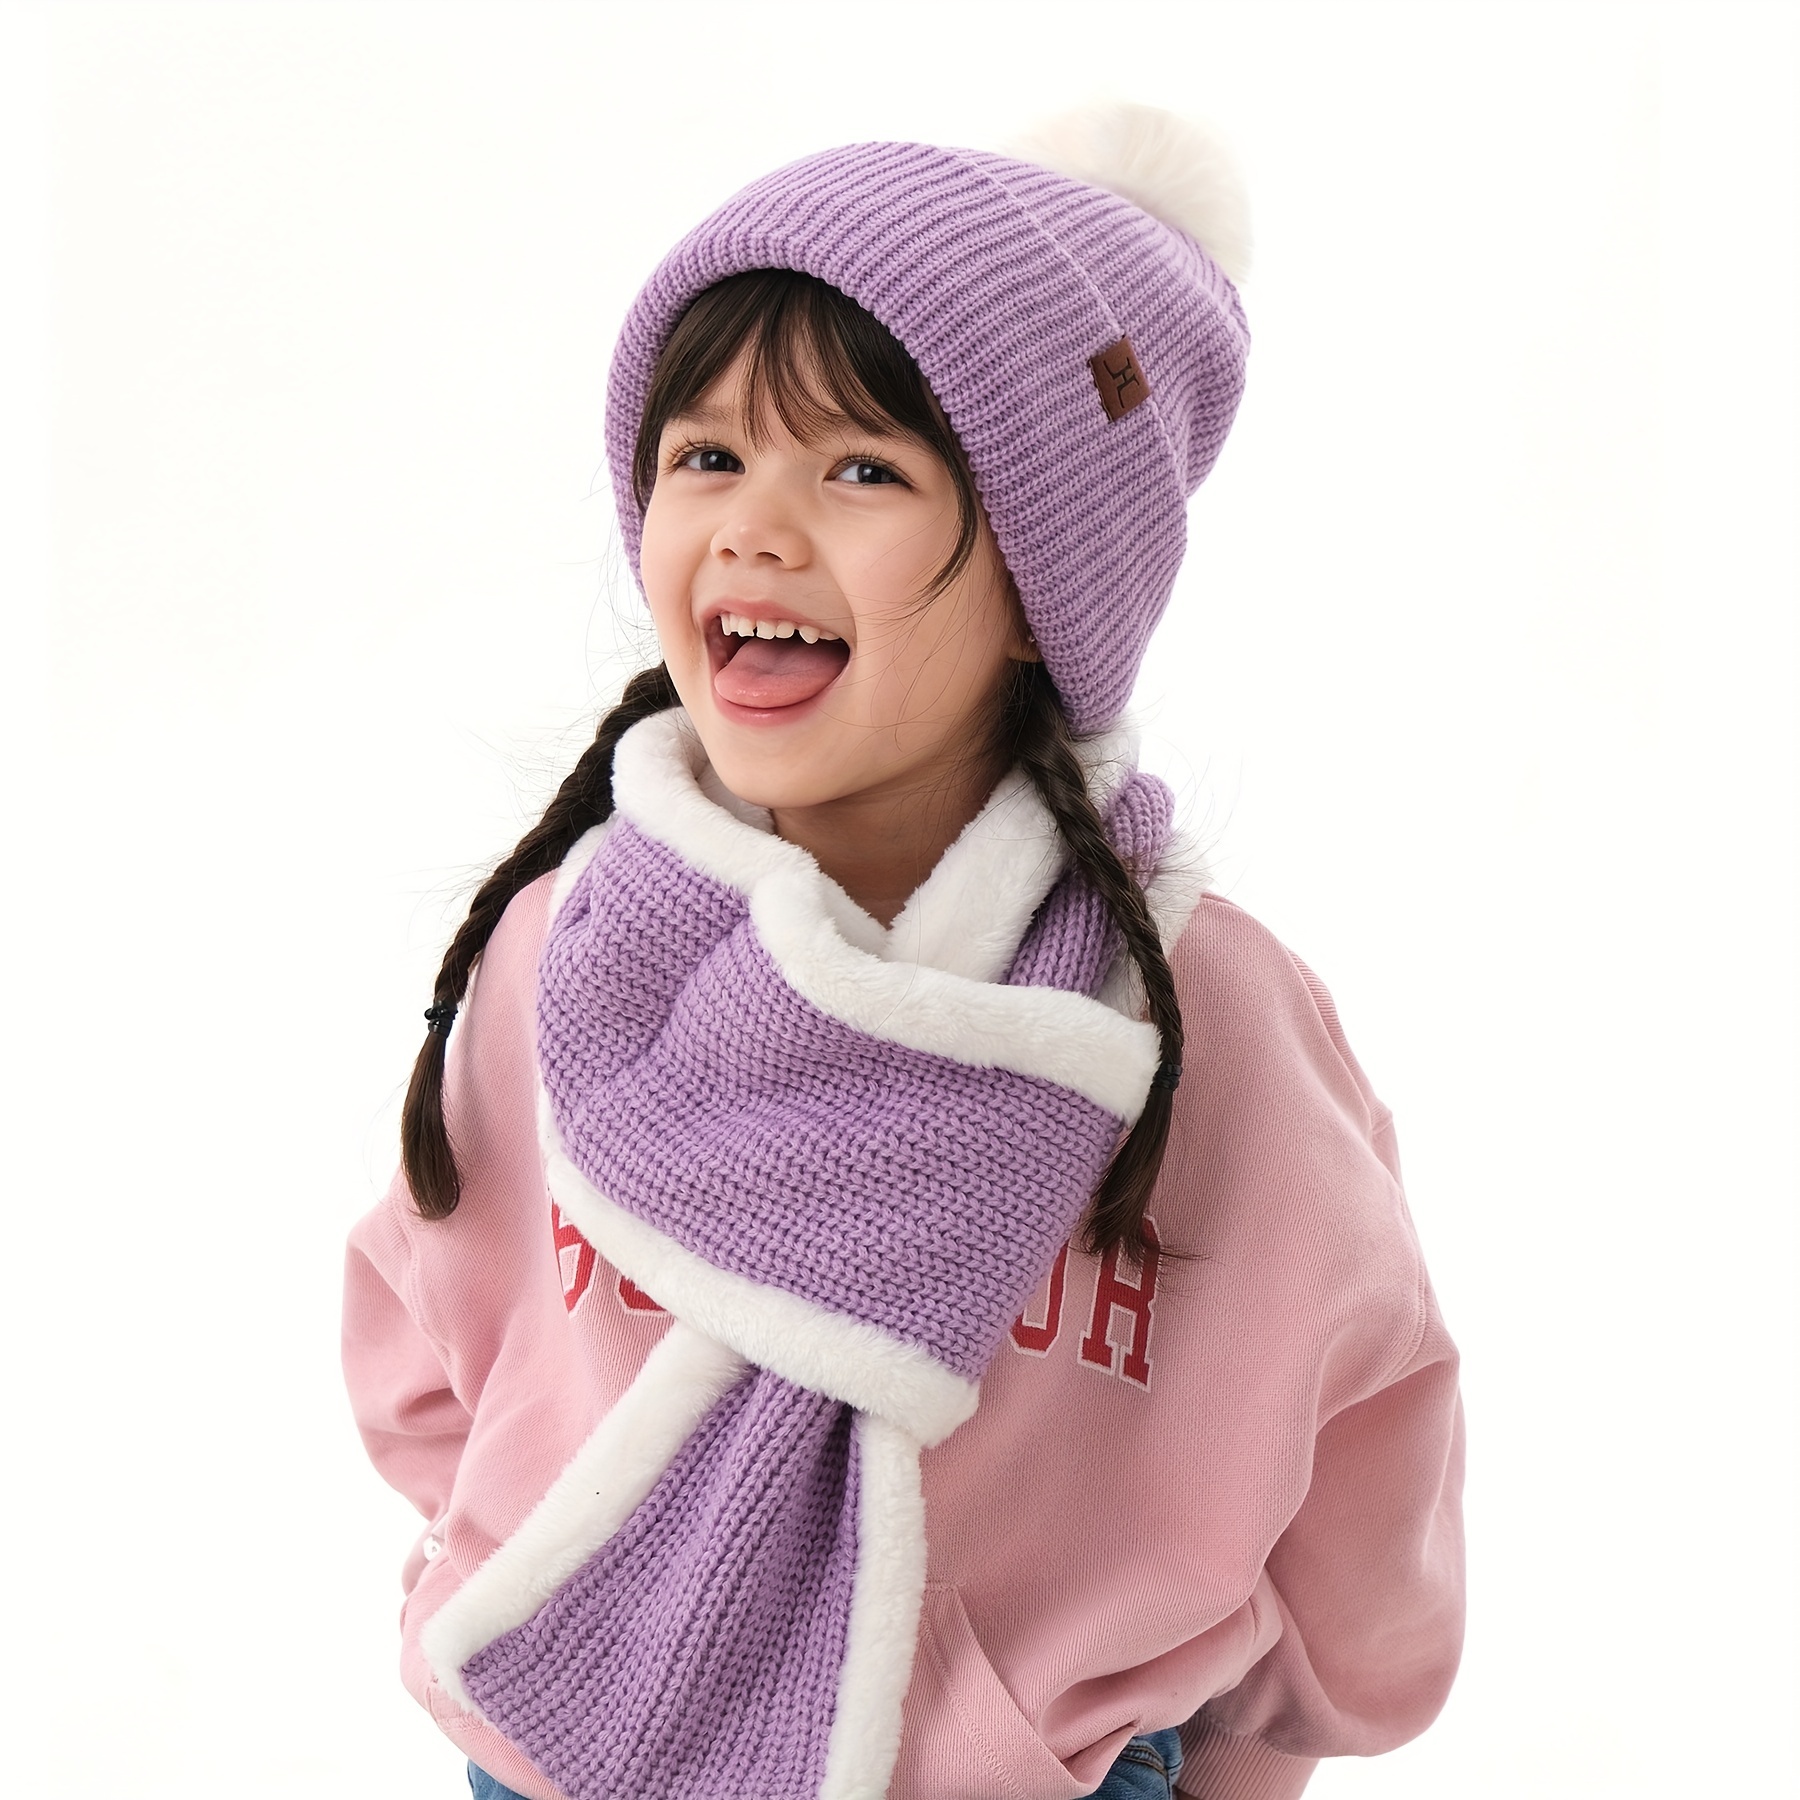 1pari Kids Winter Hat & Gloves & Scarf Set, Girls Toddler Children